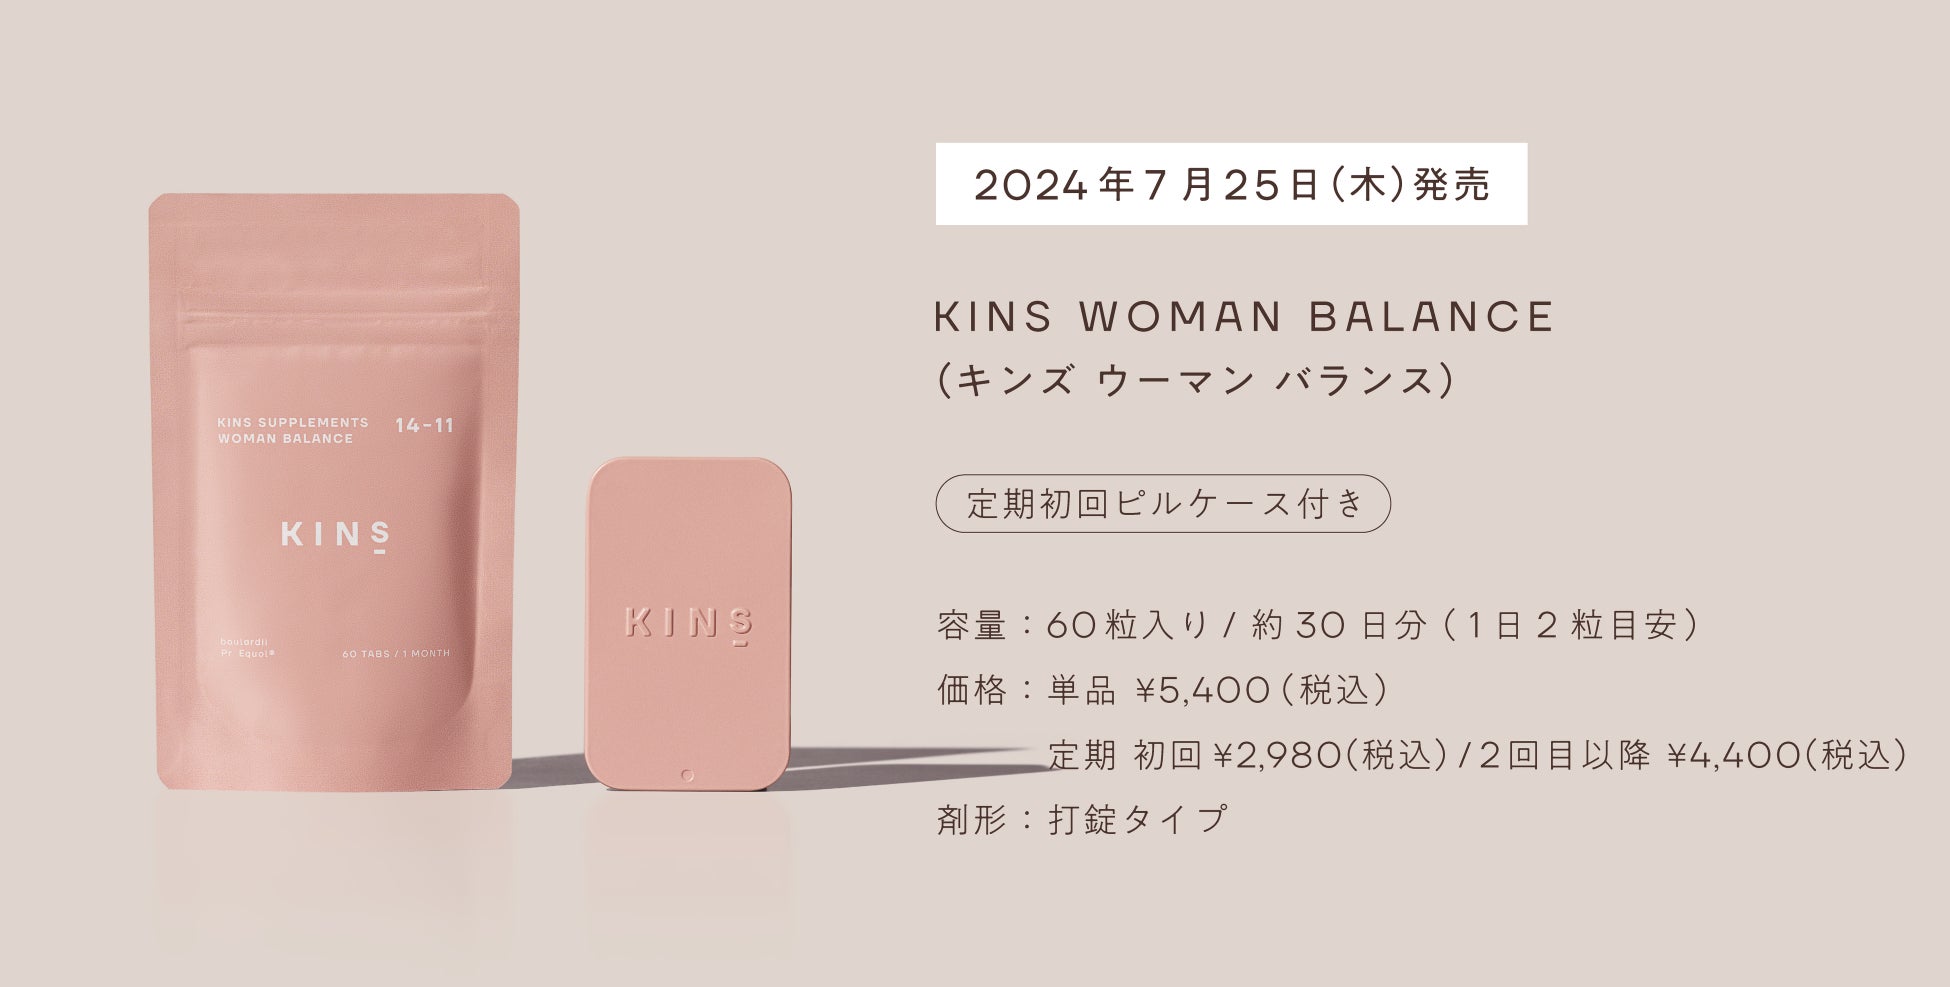 【KINS】腸内環境と女性のゆらぎに着目したサプリメント「KINS WOMAN BALANCE (キンズ ウーマン バランス)」2024年7月25日(木)より販売開始